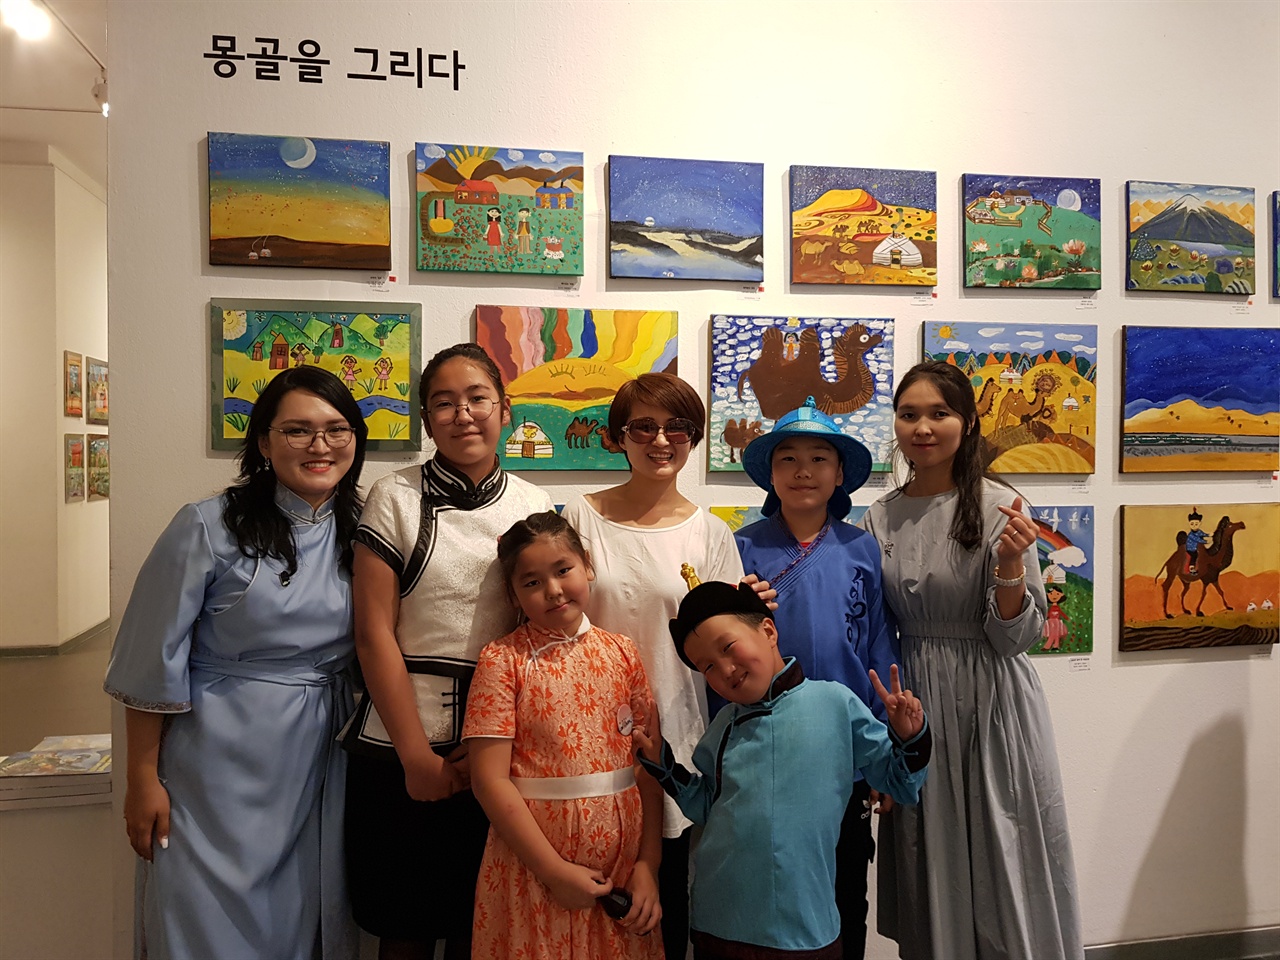 몽골의 NGO단체 '미래의 몽골'에서 활동하는 자야와 아이들  